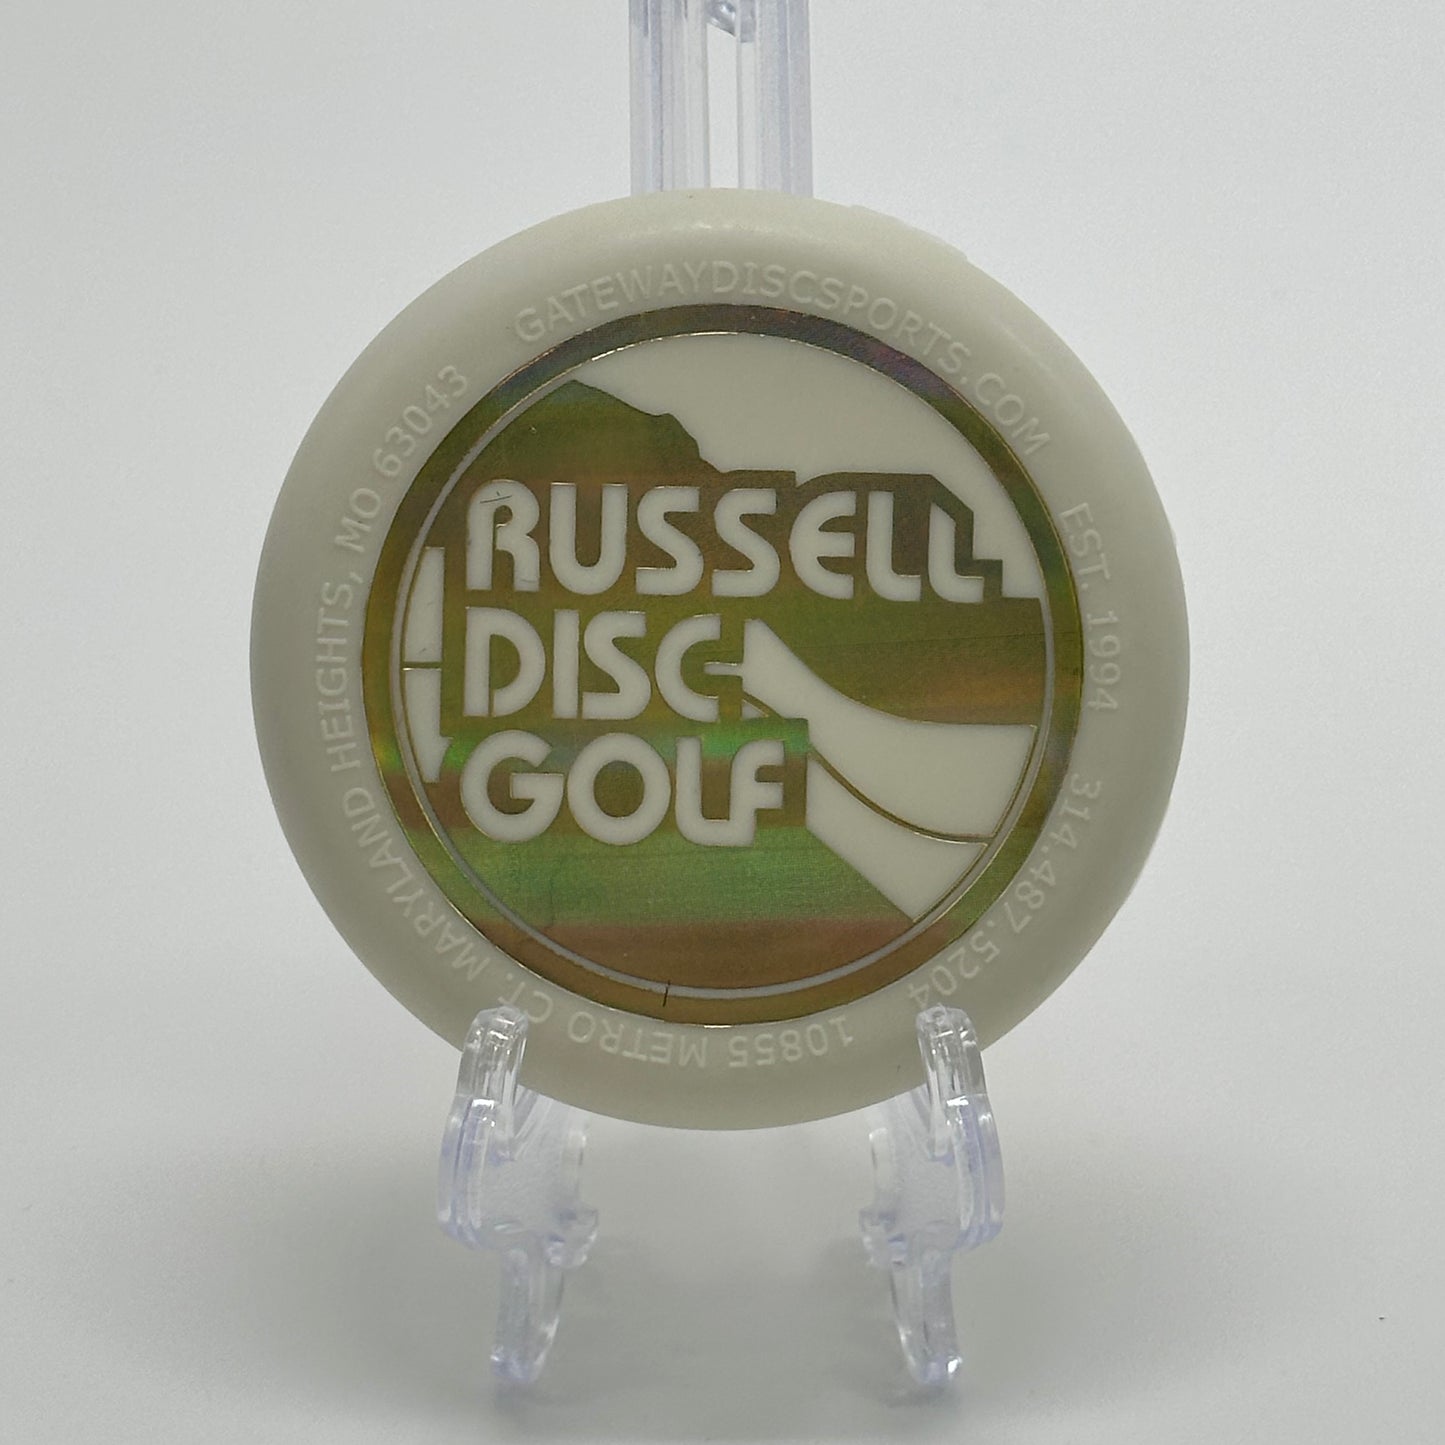 Russell Disc Golf 3.5" Glow Mini Marker